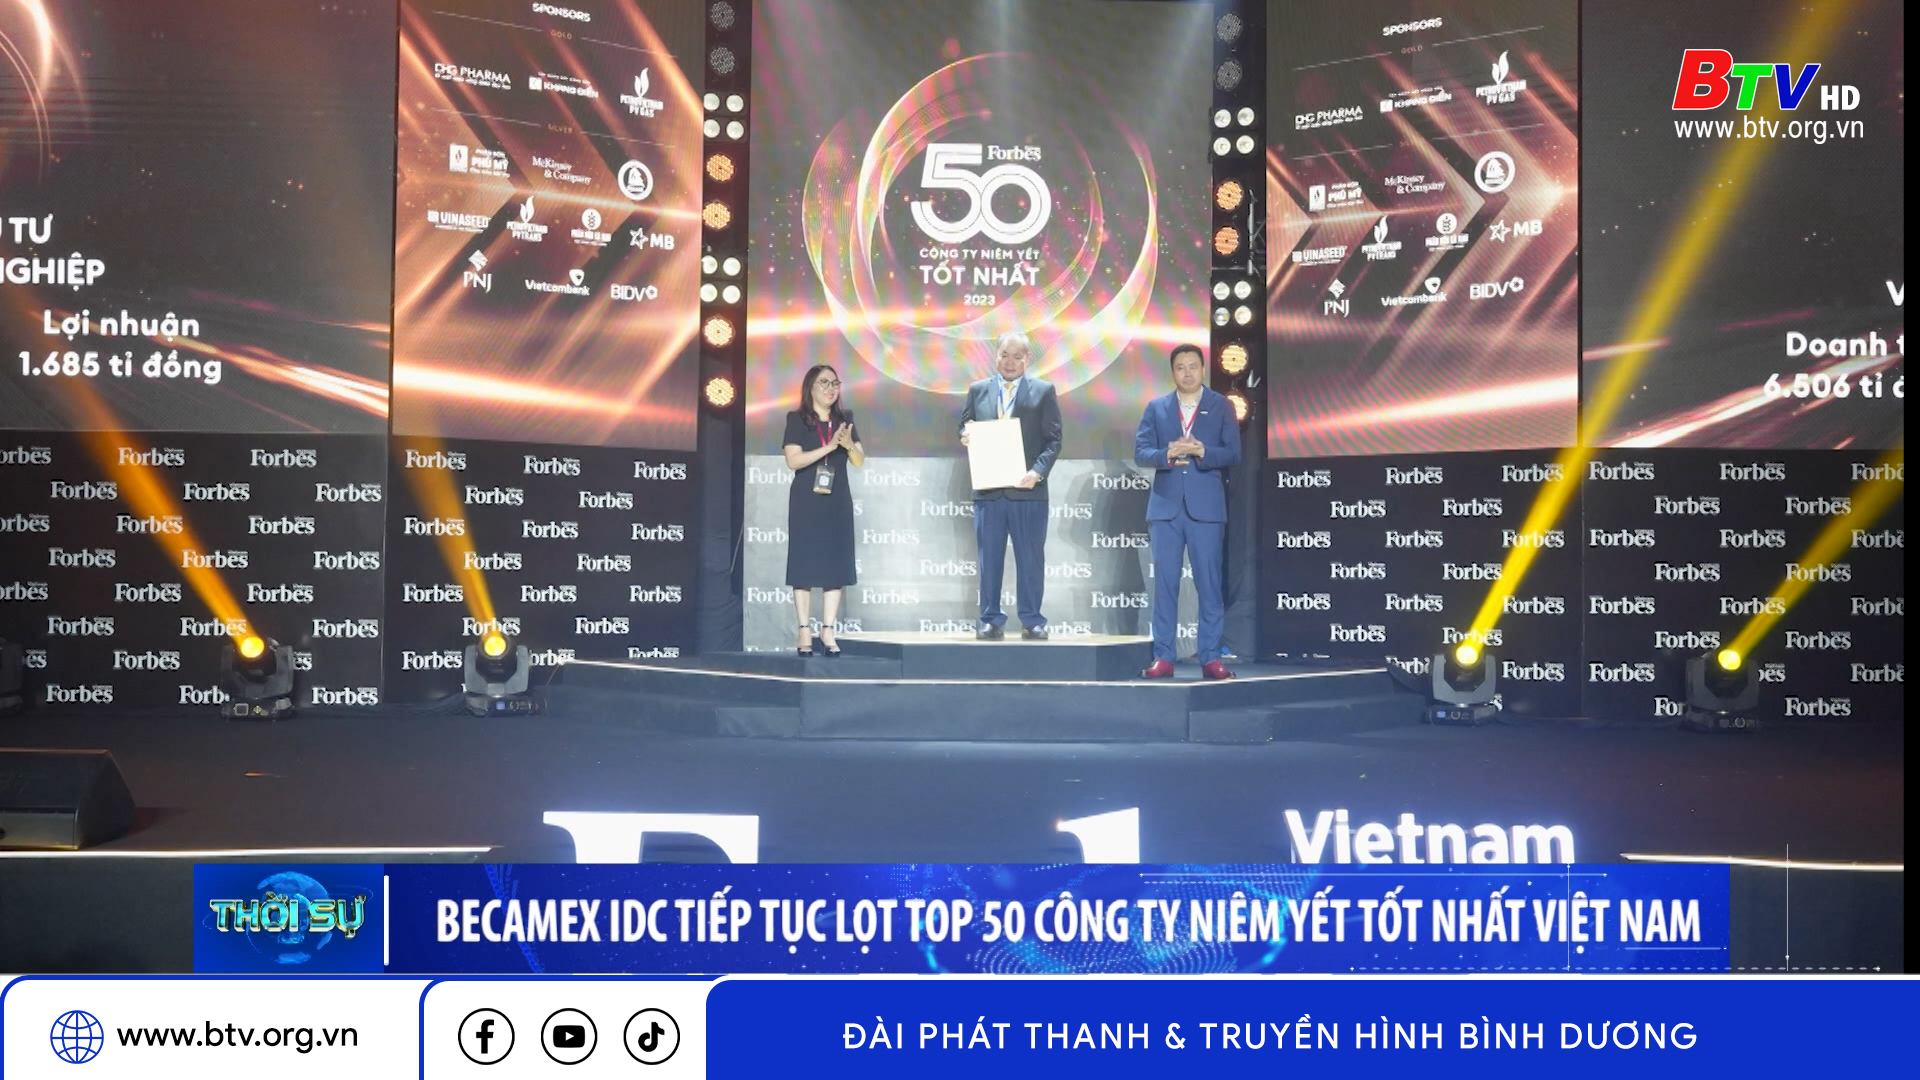 Becamex IDC tiếp tục lọt top 50 công ty niêm yết tốt nhất Việt Nam